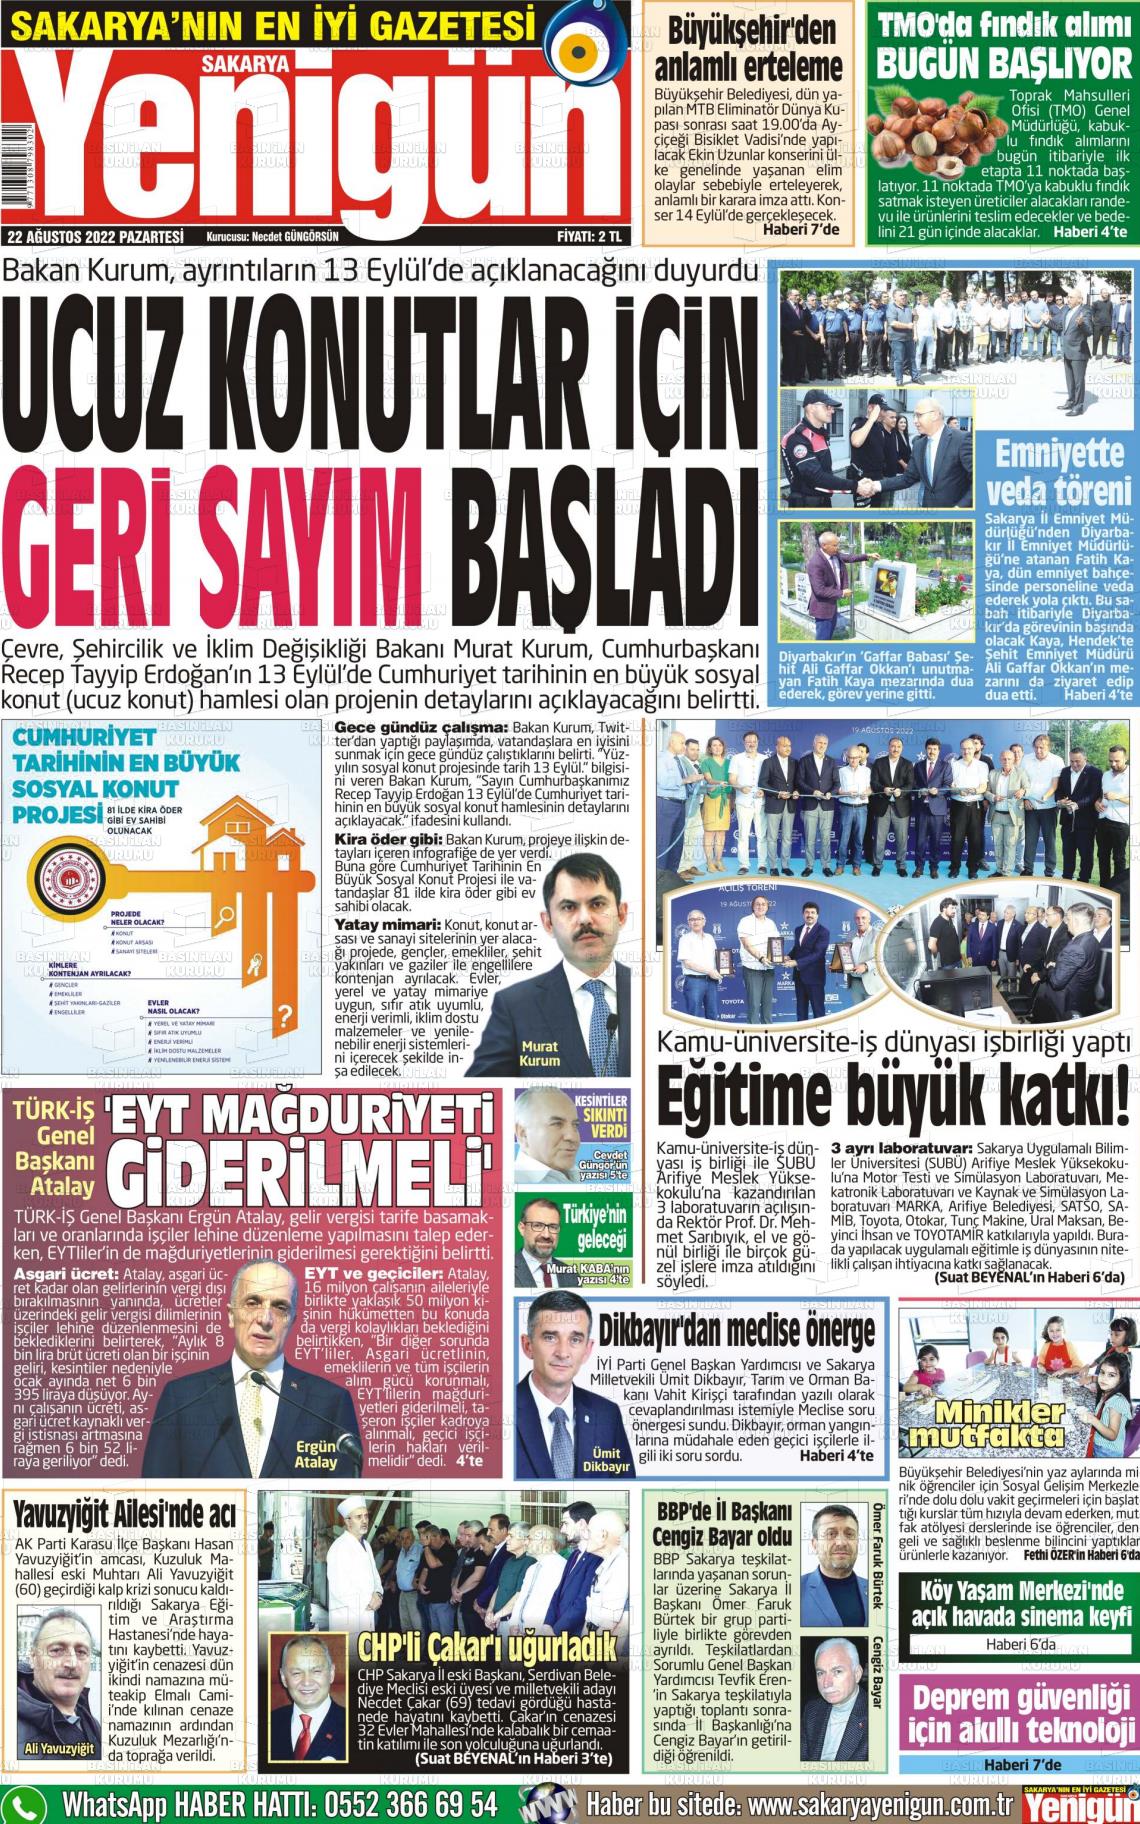 23 Ağustos 2022 Sakarya Yenigün Gazete Manşeti